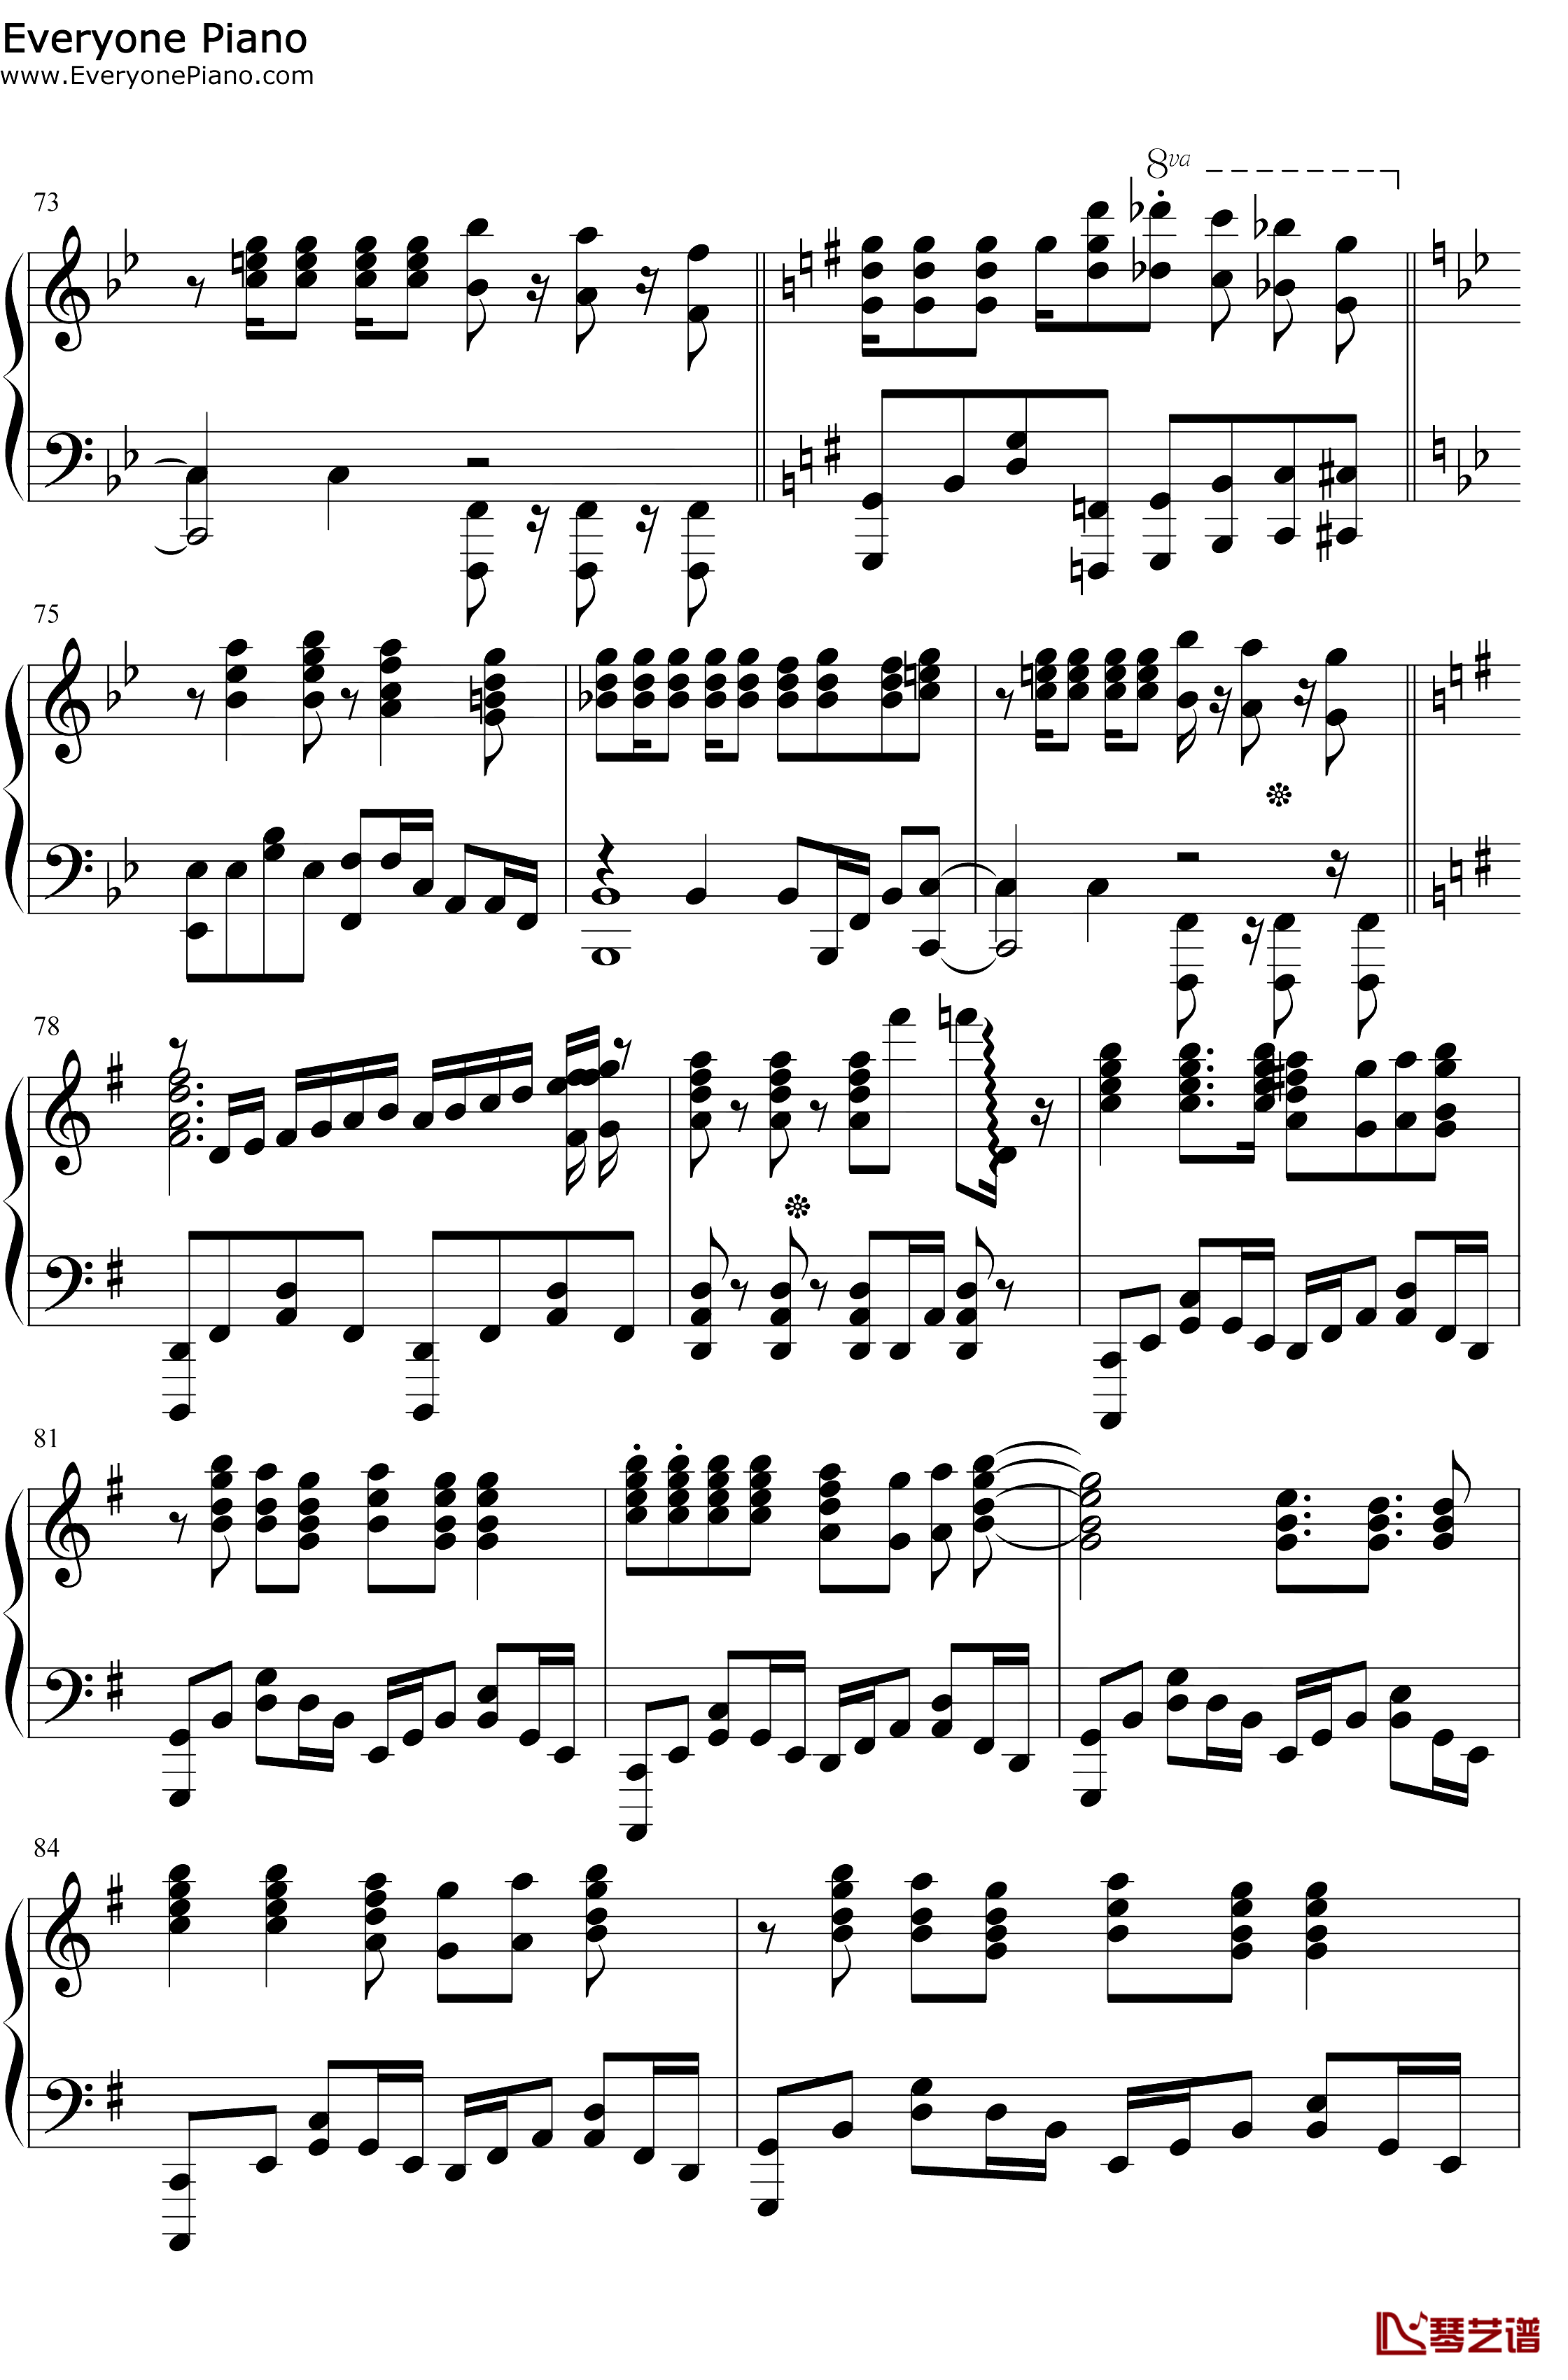 スマイルスキル=スキスキル钢琴谱-麦露烈娜梅维丝珀琳-我不是说了能力要平均值么OP8